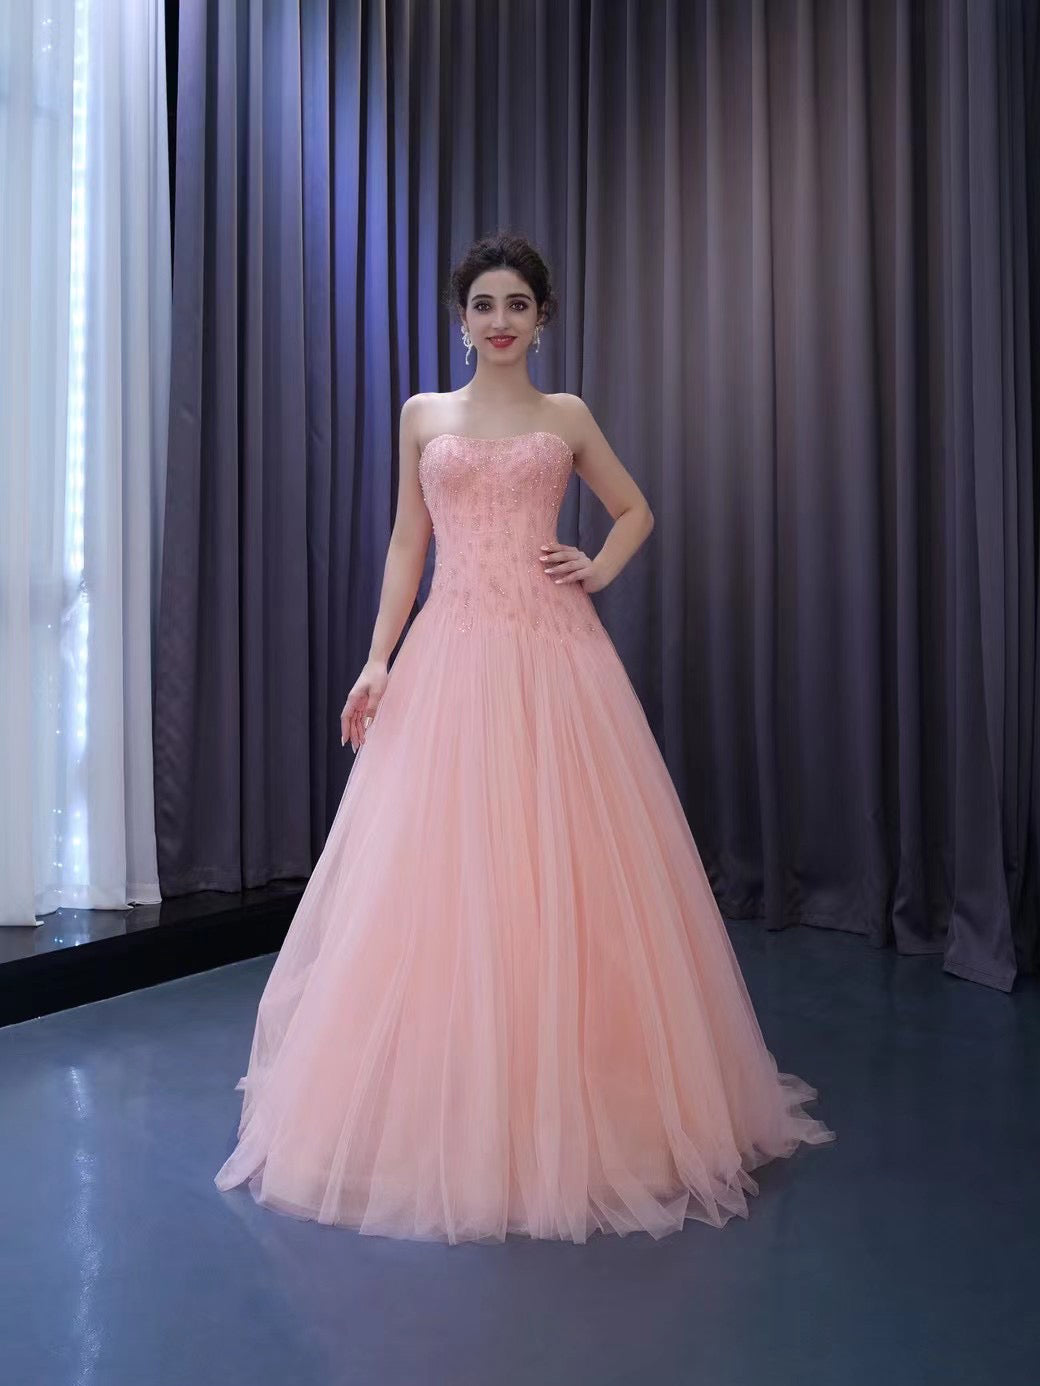 Dress Long Frill | Party Dress | Prom Dress | Ball Gown - Pink Ball Gown 3d  16 Dress Beaded - Aliexpress